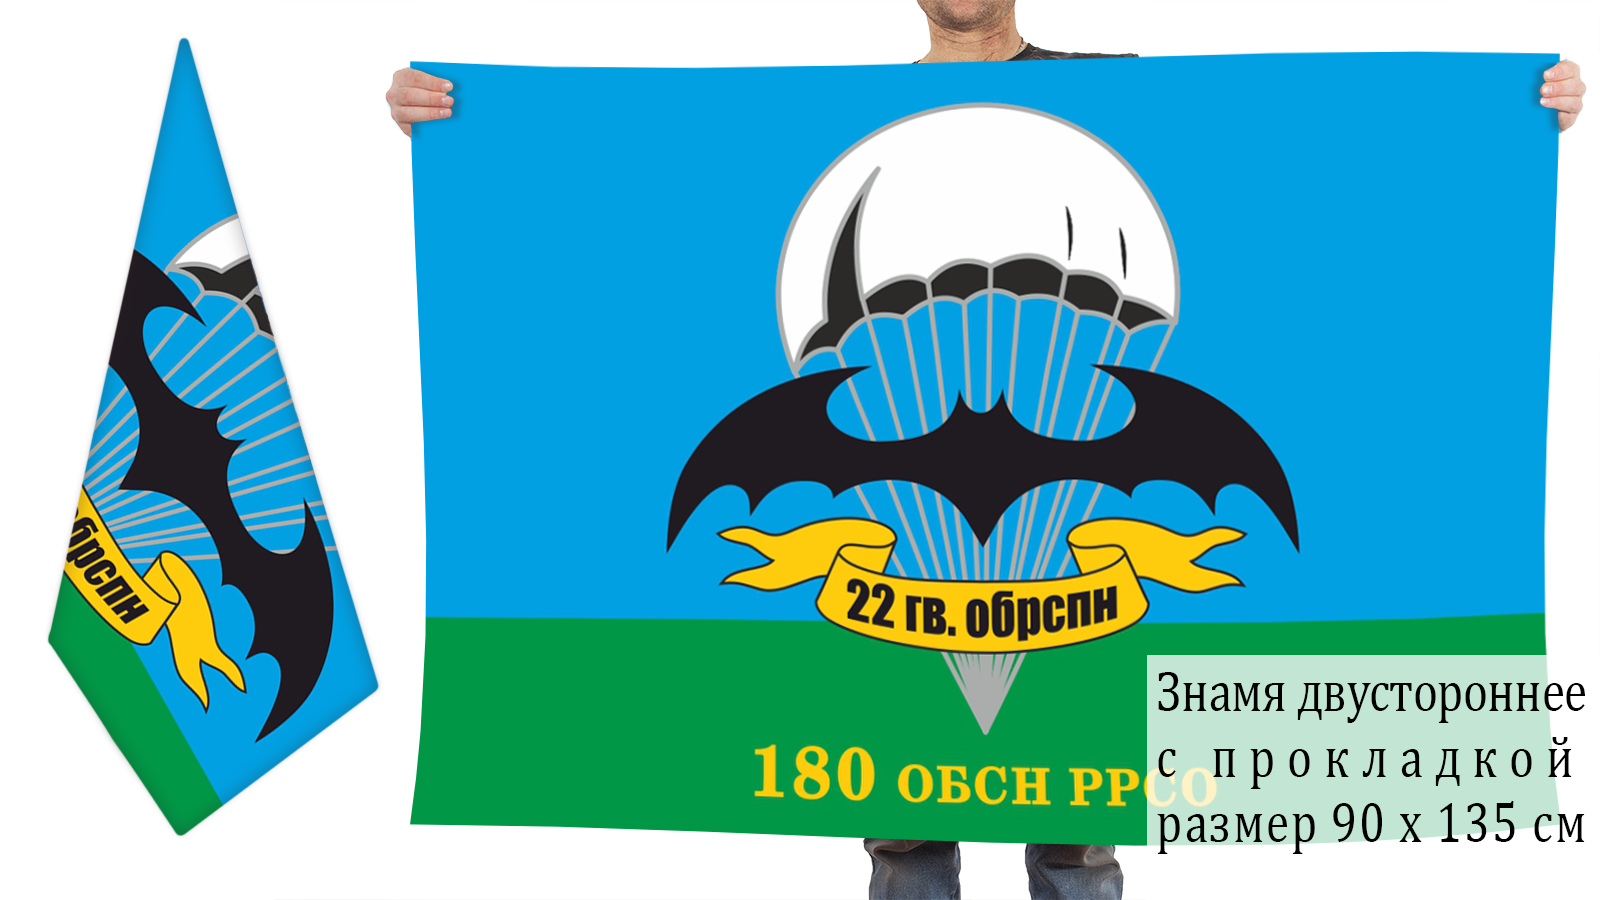 Двусторонний флаг 180 ОБСН ГРУ